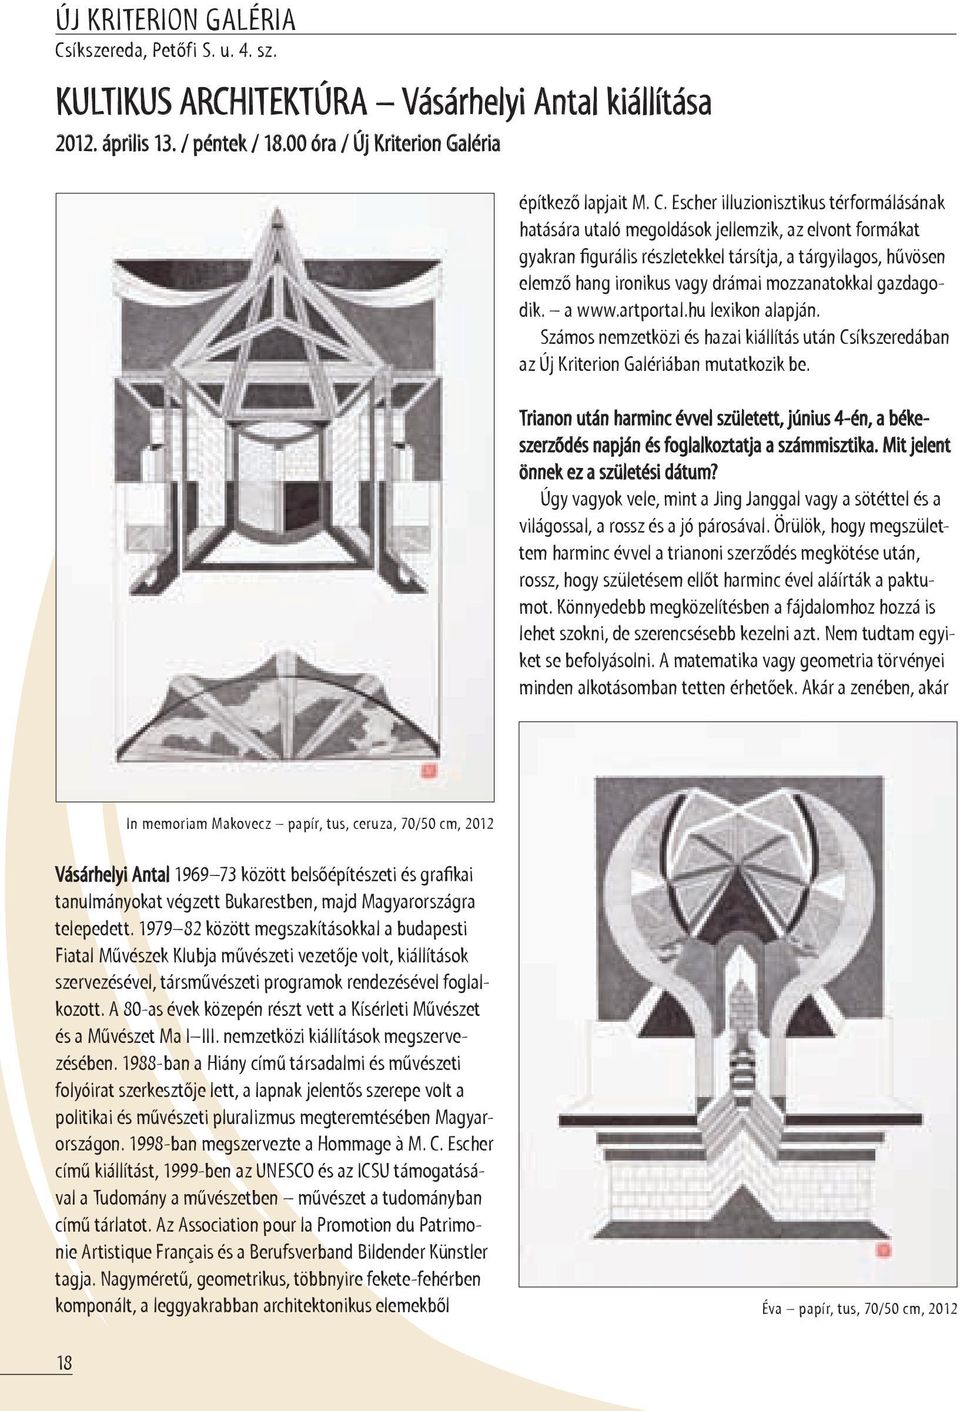 Escher illuzionisztikus térformálásának hatására utaló megoldások jellemzik, az elvont formákat gyakran figurális részletekkel társítja, a tárgyilagos, hűvösen elemző hang ironikus vagy drámai